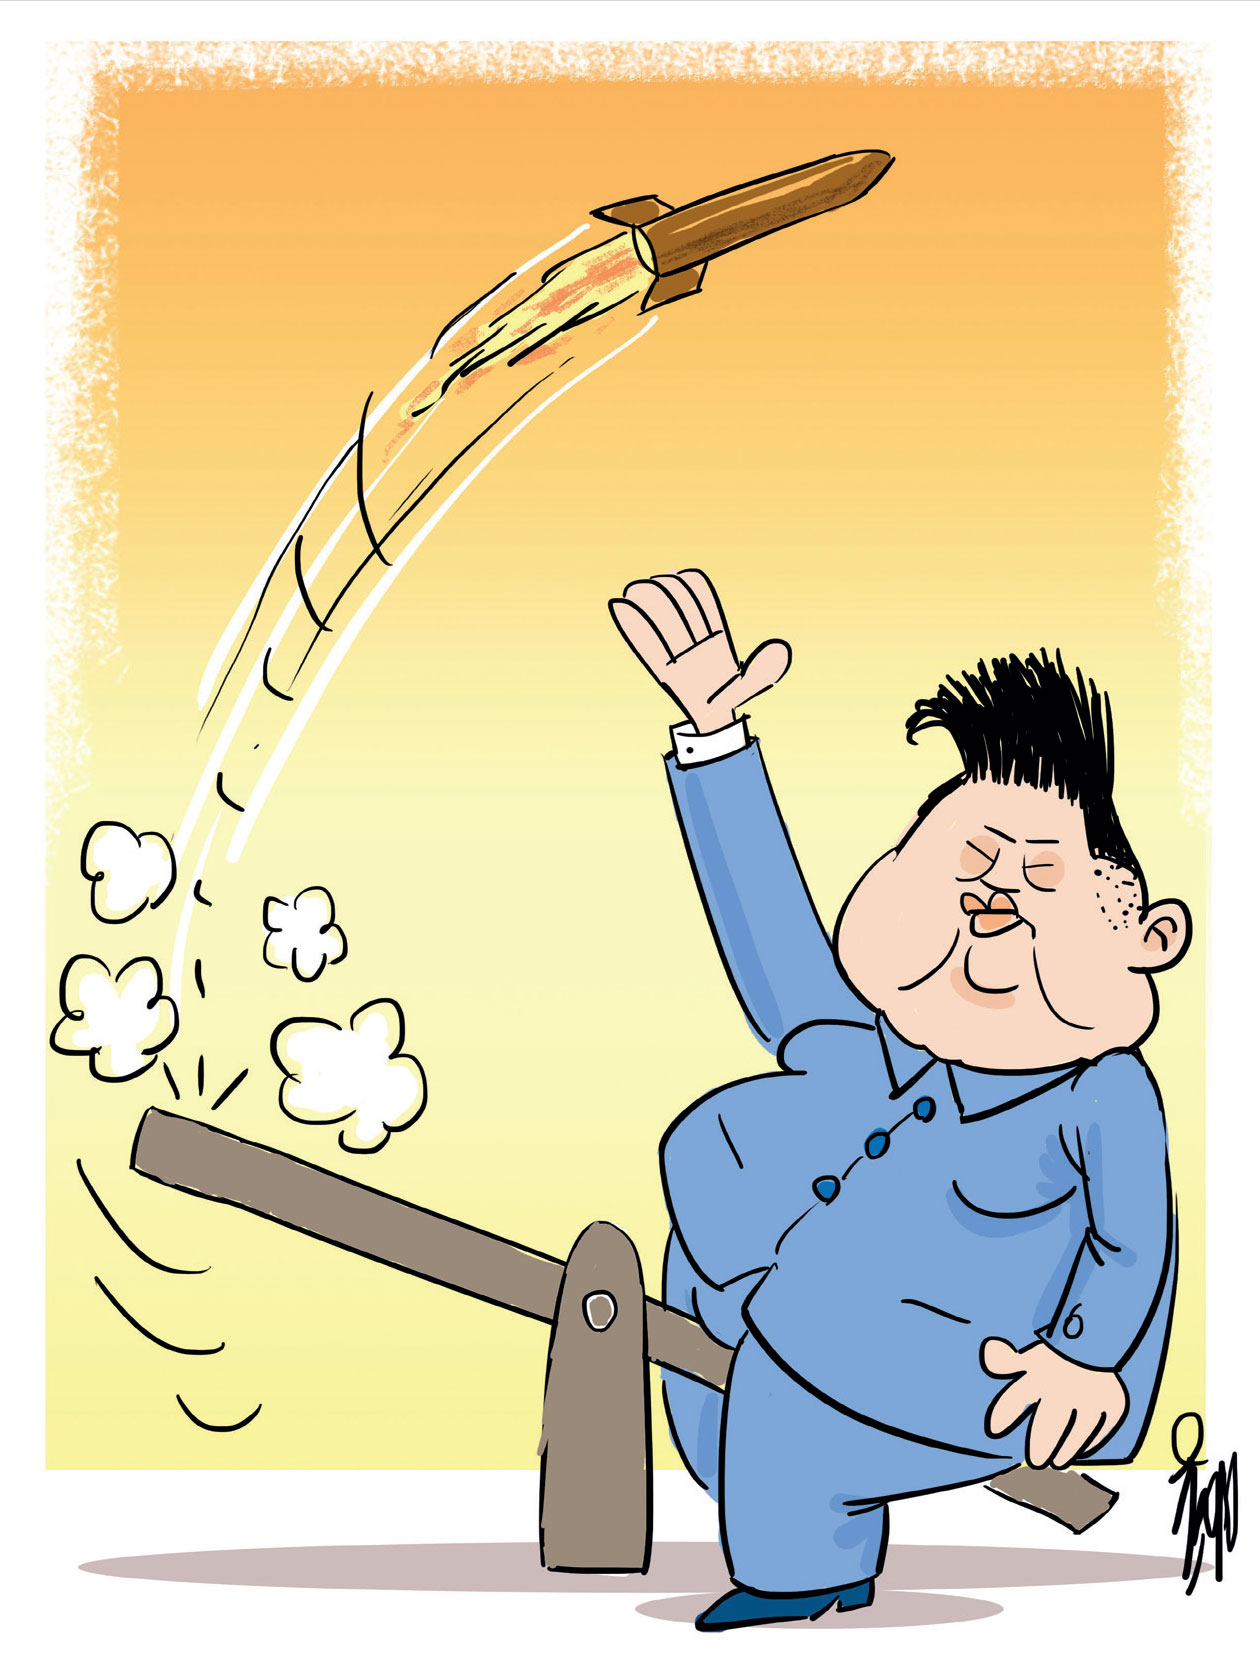 کاریکاتور: موشک بازی رهبر کره شمالی